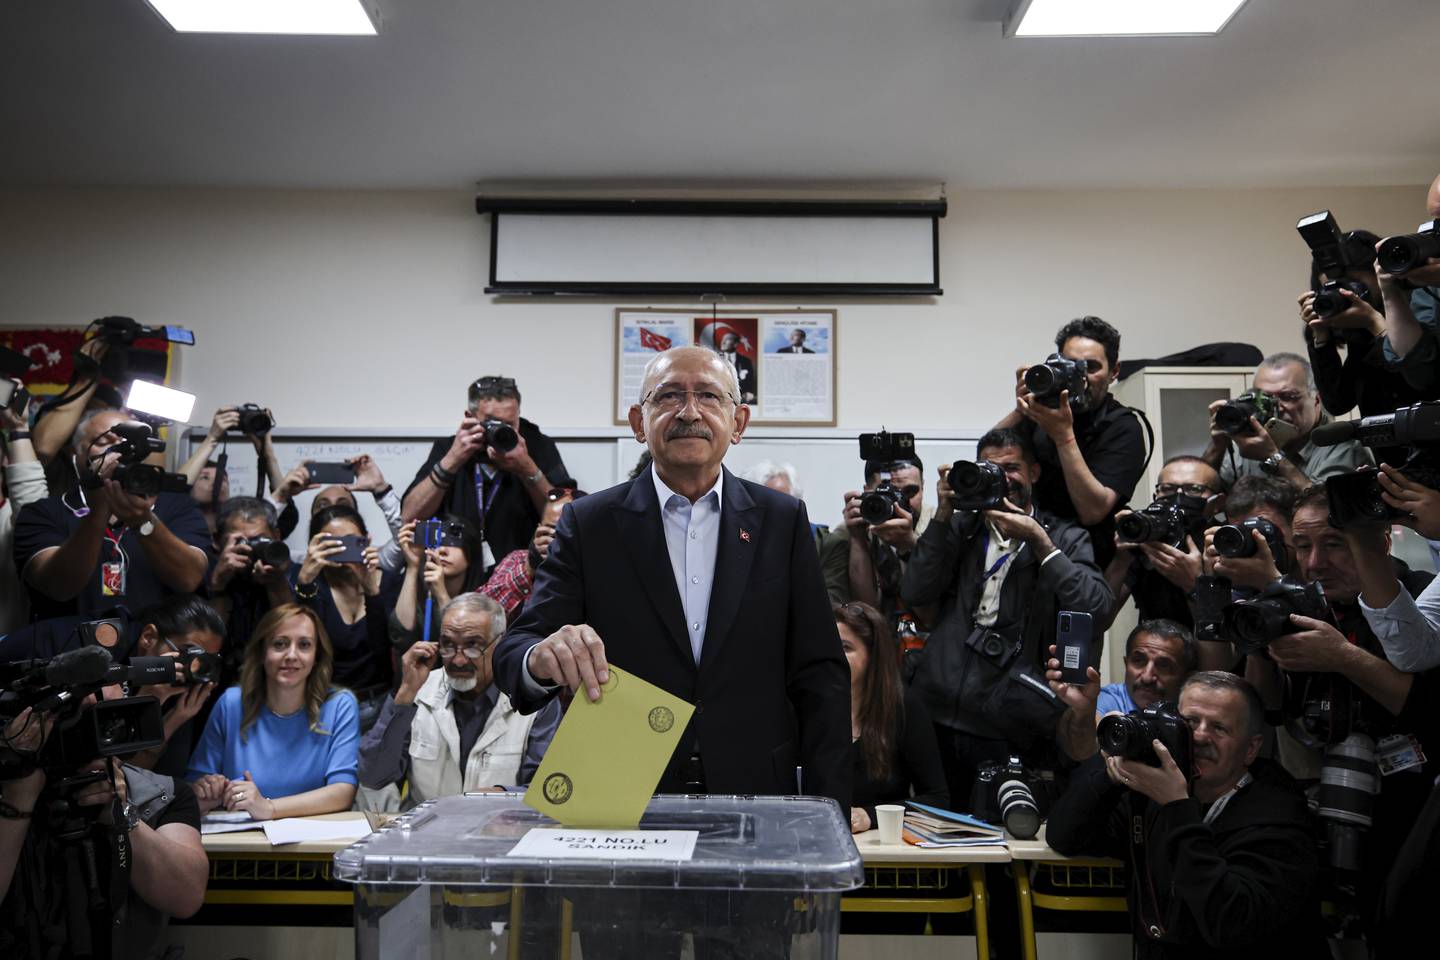 Tyrkias opposisjonsleder Kemal Kilicdaroglu avgir sin stemme – trolig på seg selv. Foto: Riza Ozel / dia Images via AP / NTB